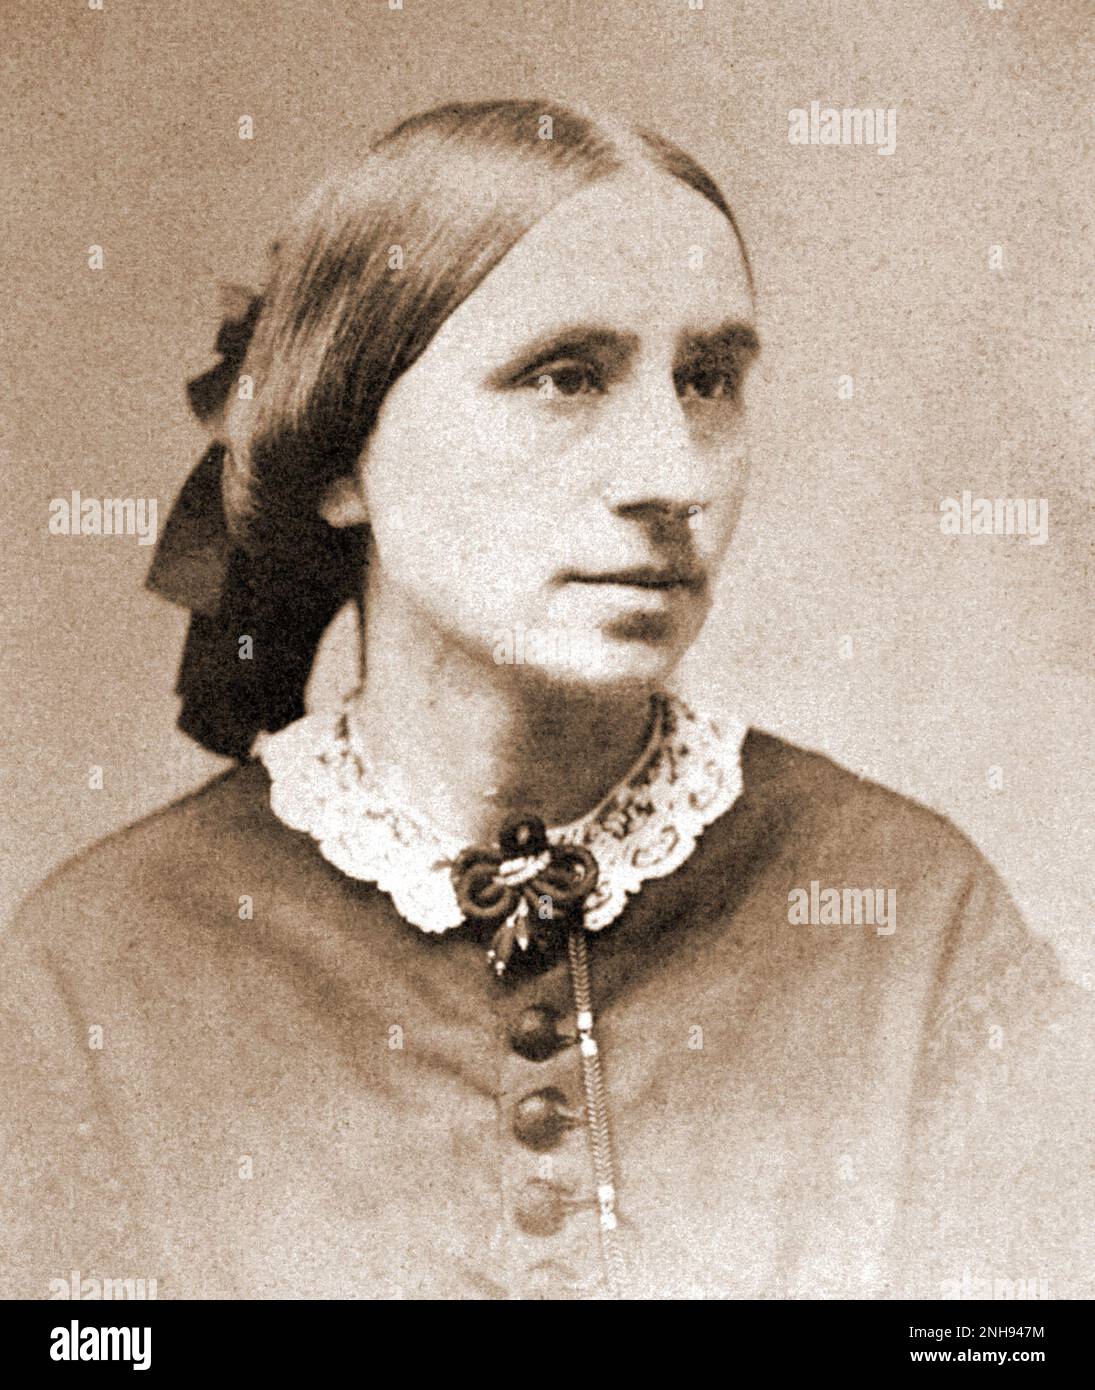 Marie Elisabeth Zakrzewska (1829-1902), eine polnisch-amerikanische Ärztin, die ihren Namen als Pionierärztin in den Vereinigten Staaten machte und das New England Hospital for Women and Children gründete. Foto ca. 1845-1855./n/n Stockfoto